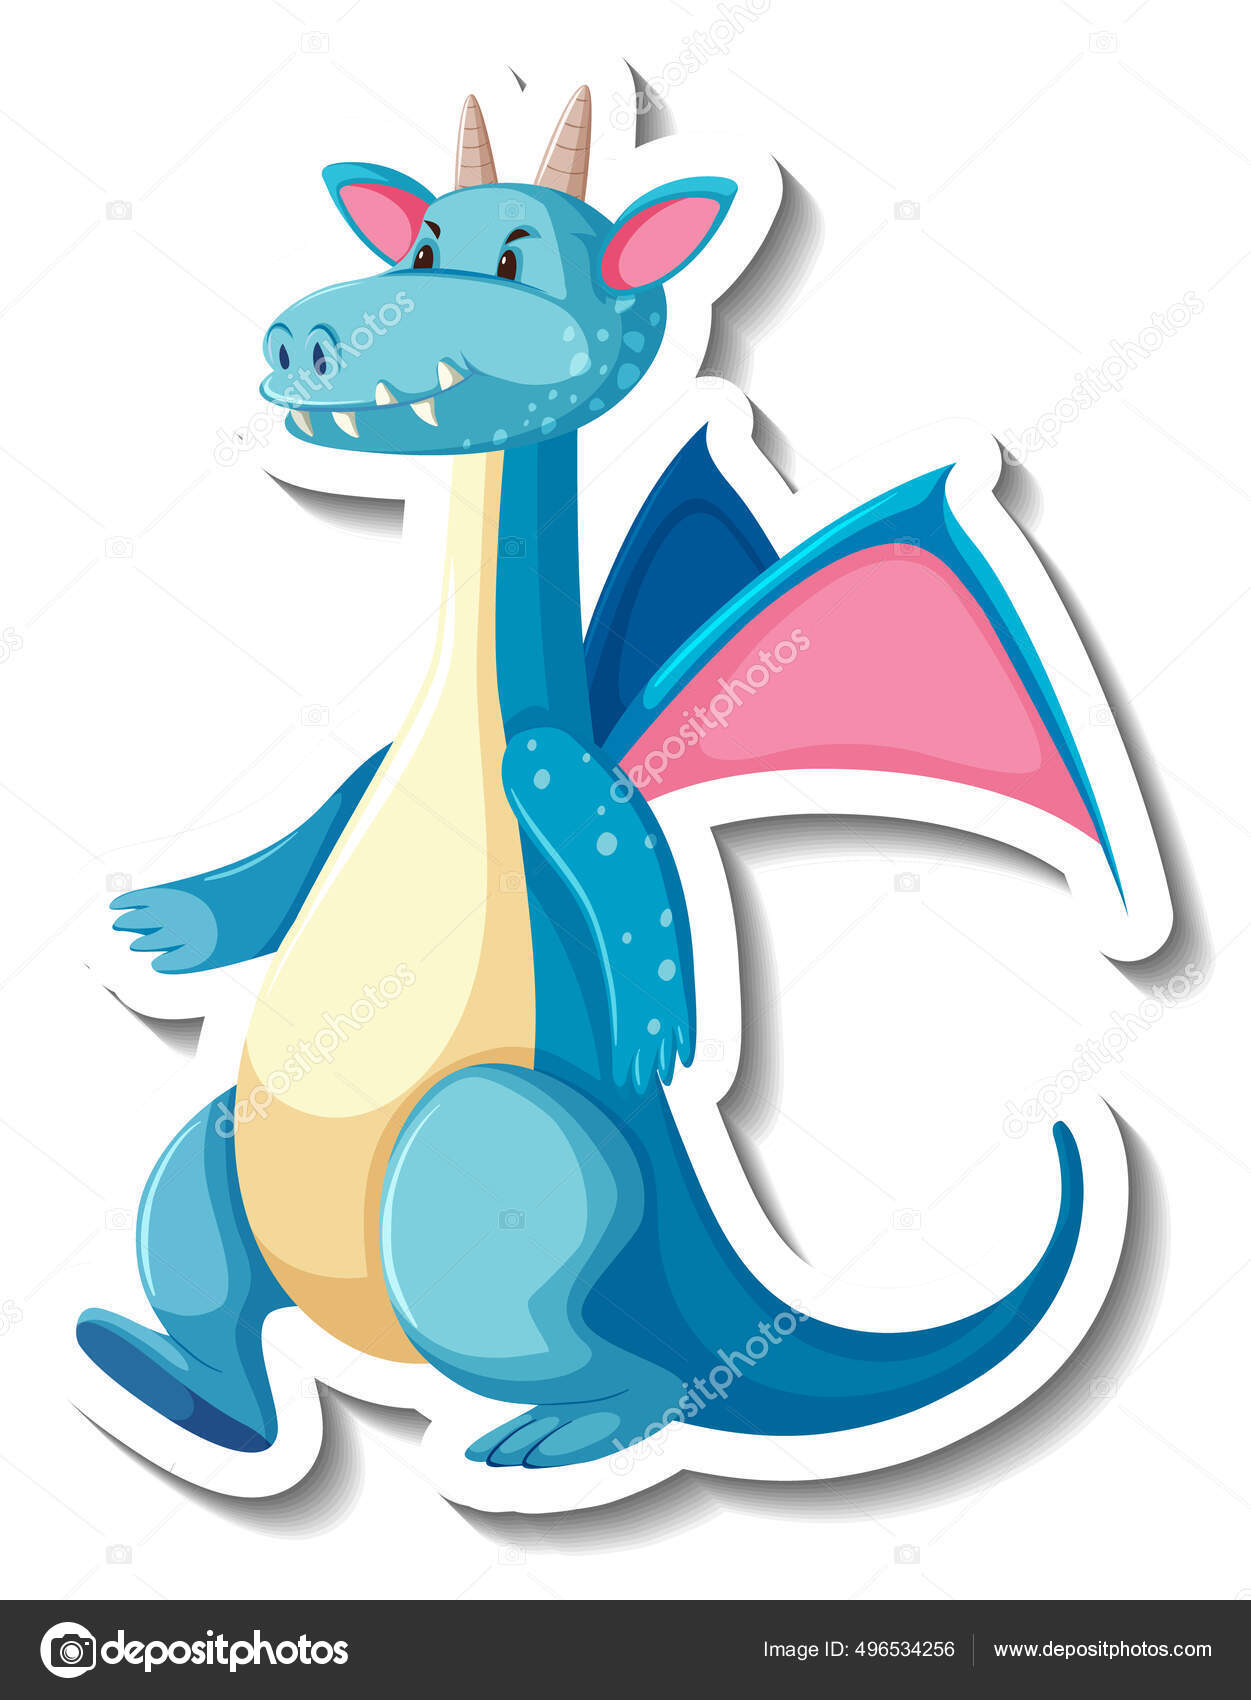 Personagem de desenho animado de dinossauro multicolorido